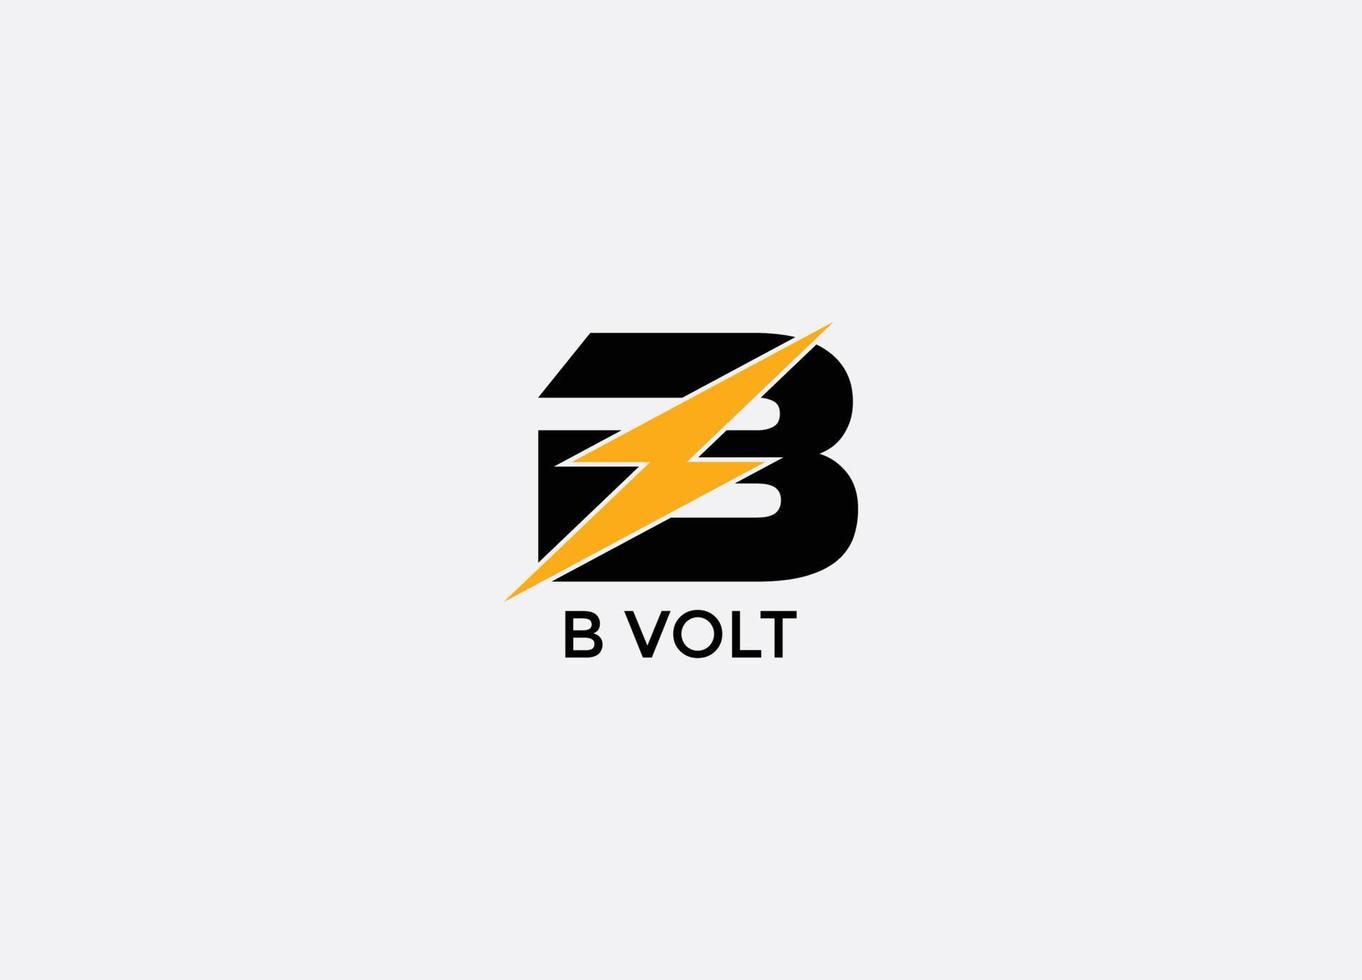 B Volt Abstract B modern tech emblem logo design vector